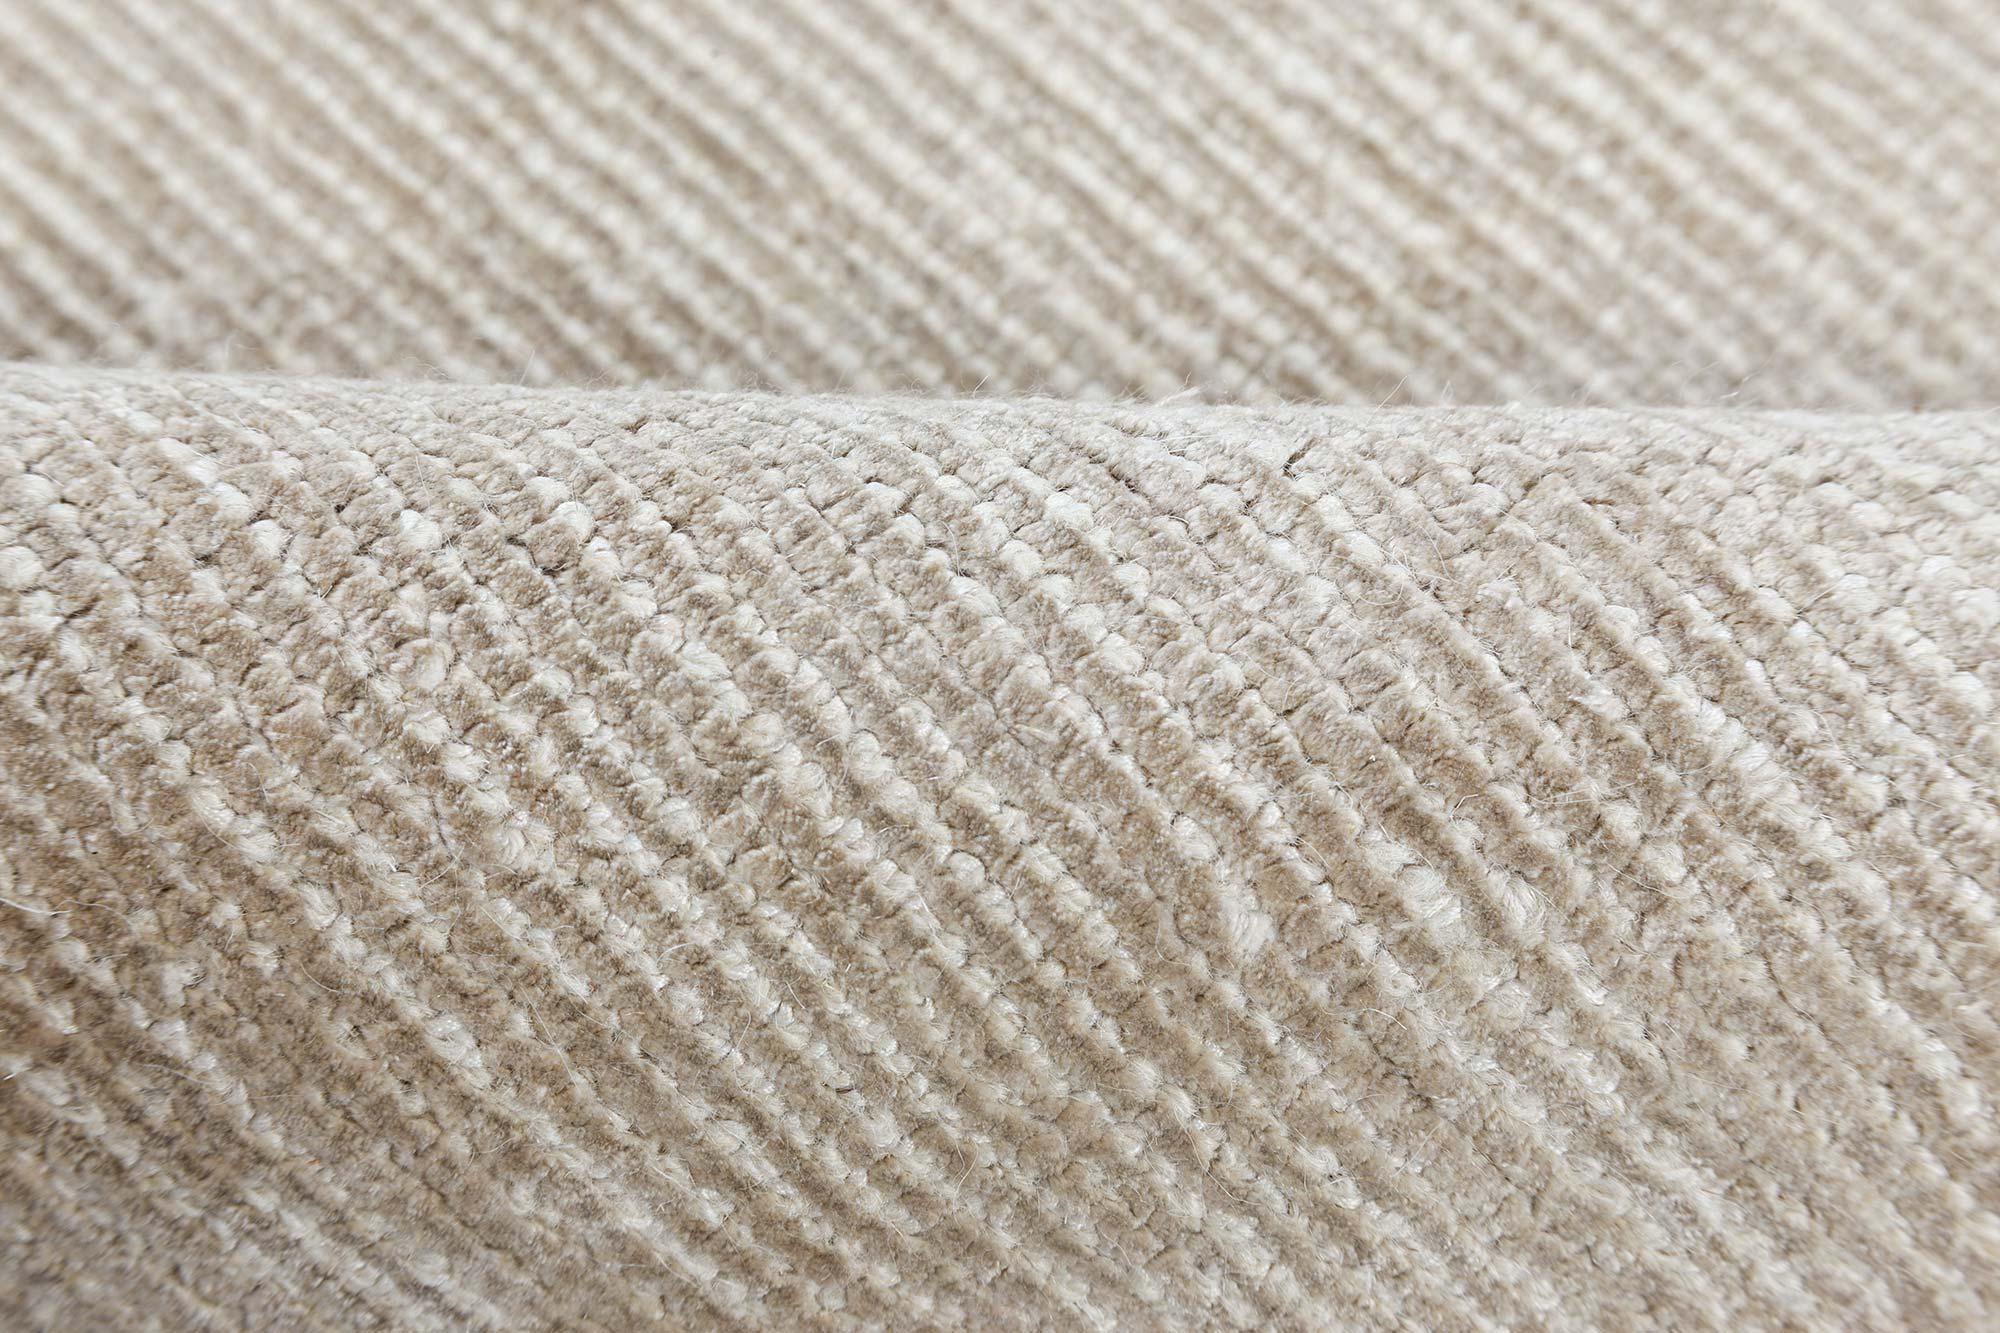 Contemporary beige handmade wool rug by Doris Leslie Blau.
Size: 9'10